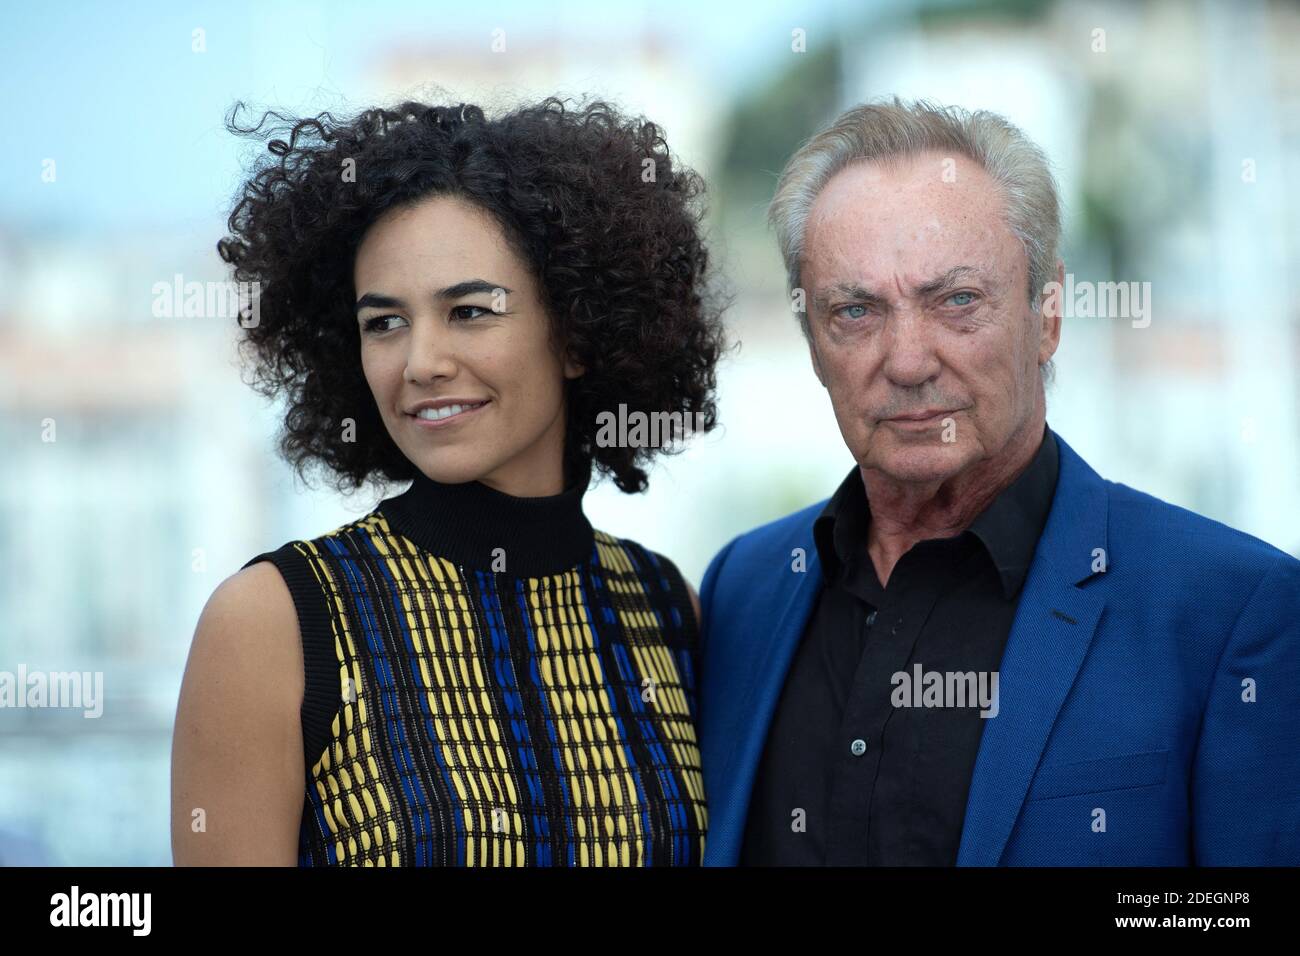 Barbara Colen e Udo Kier partecipano al Bacurau Photocall nell'ambito del 72esimo Festival Internazionale del Cinema di Cannes, in Francia, il 16 maggio 2019. Foto di Aurore Marechal/ABACAPRESS.COM Foto Stock